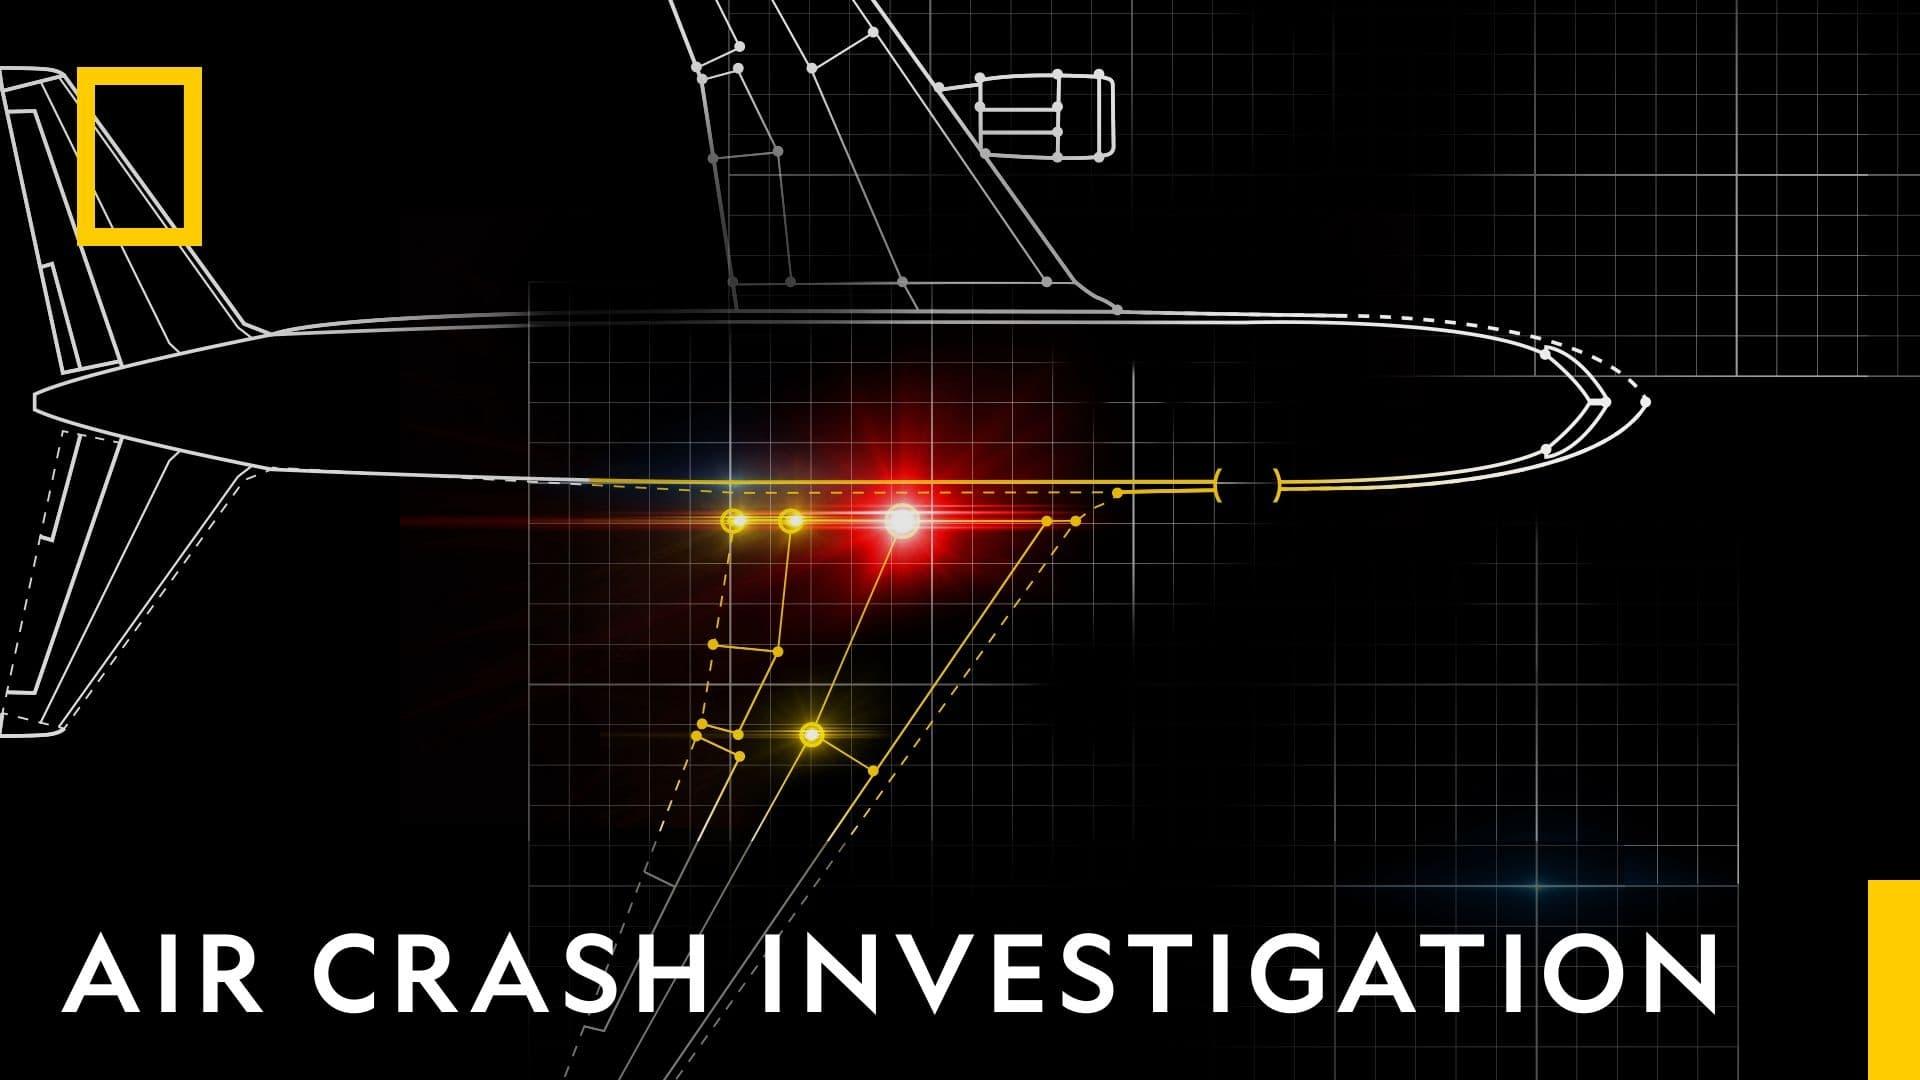 Air Crash Investigation: Special Report backdrop